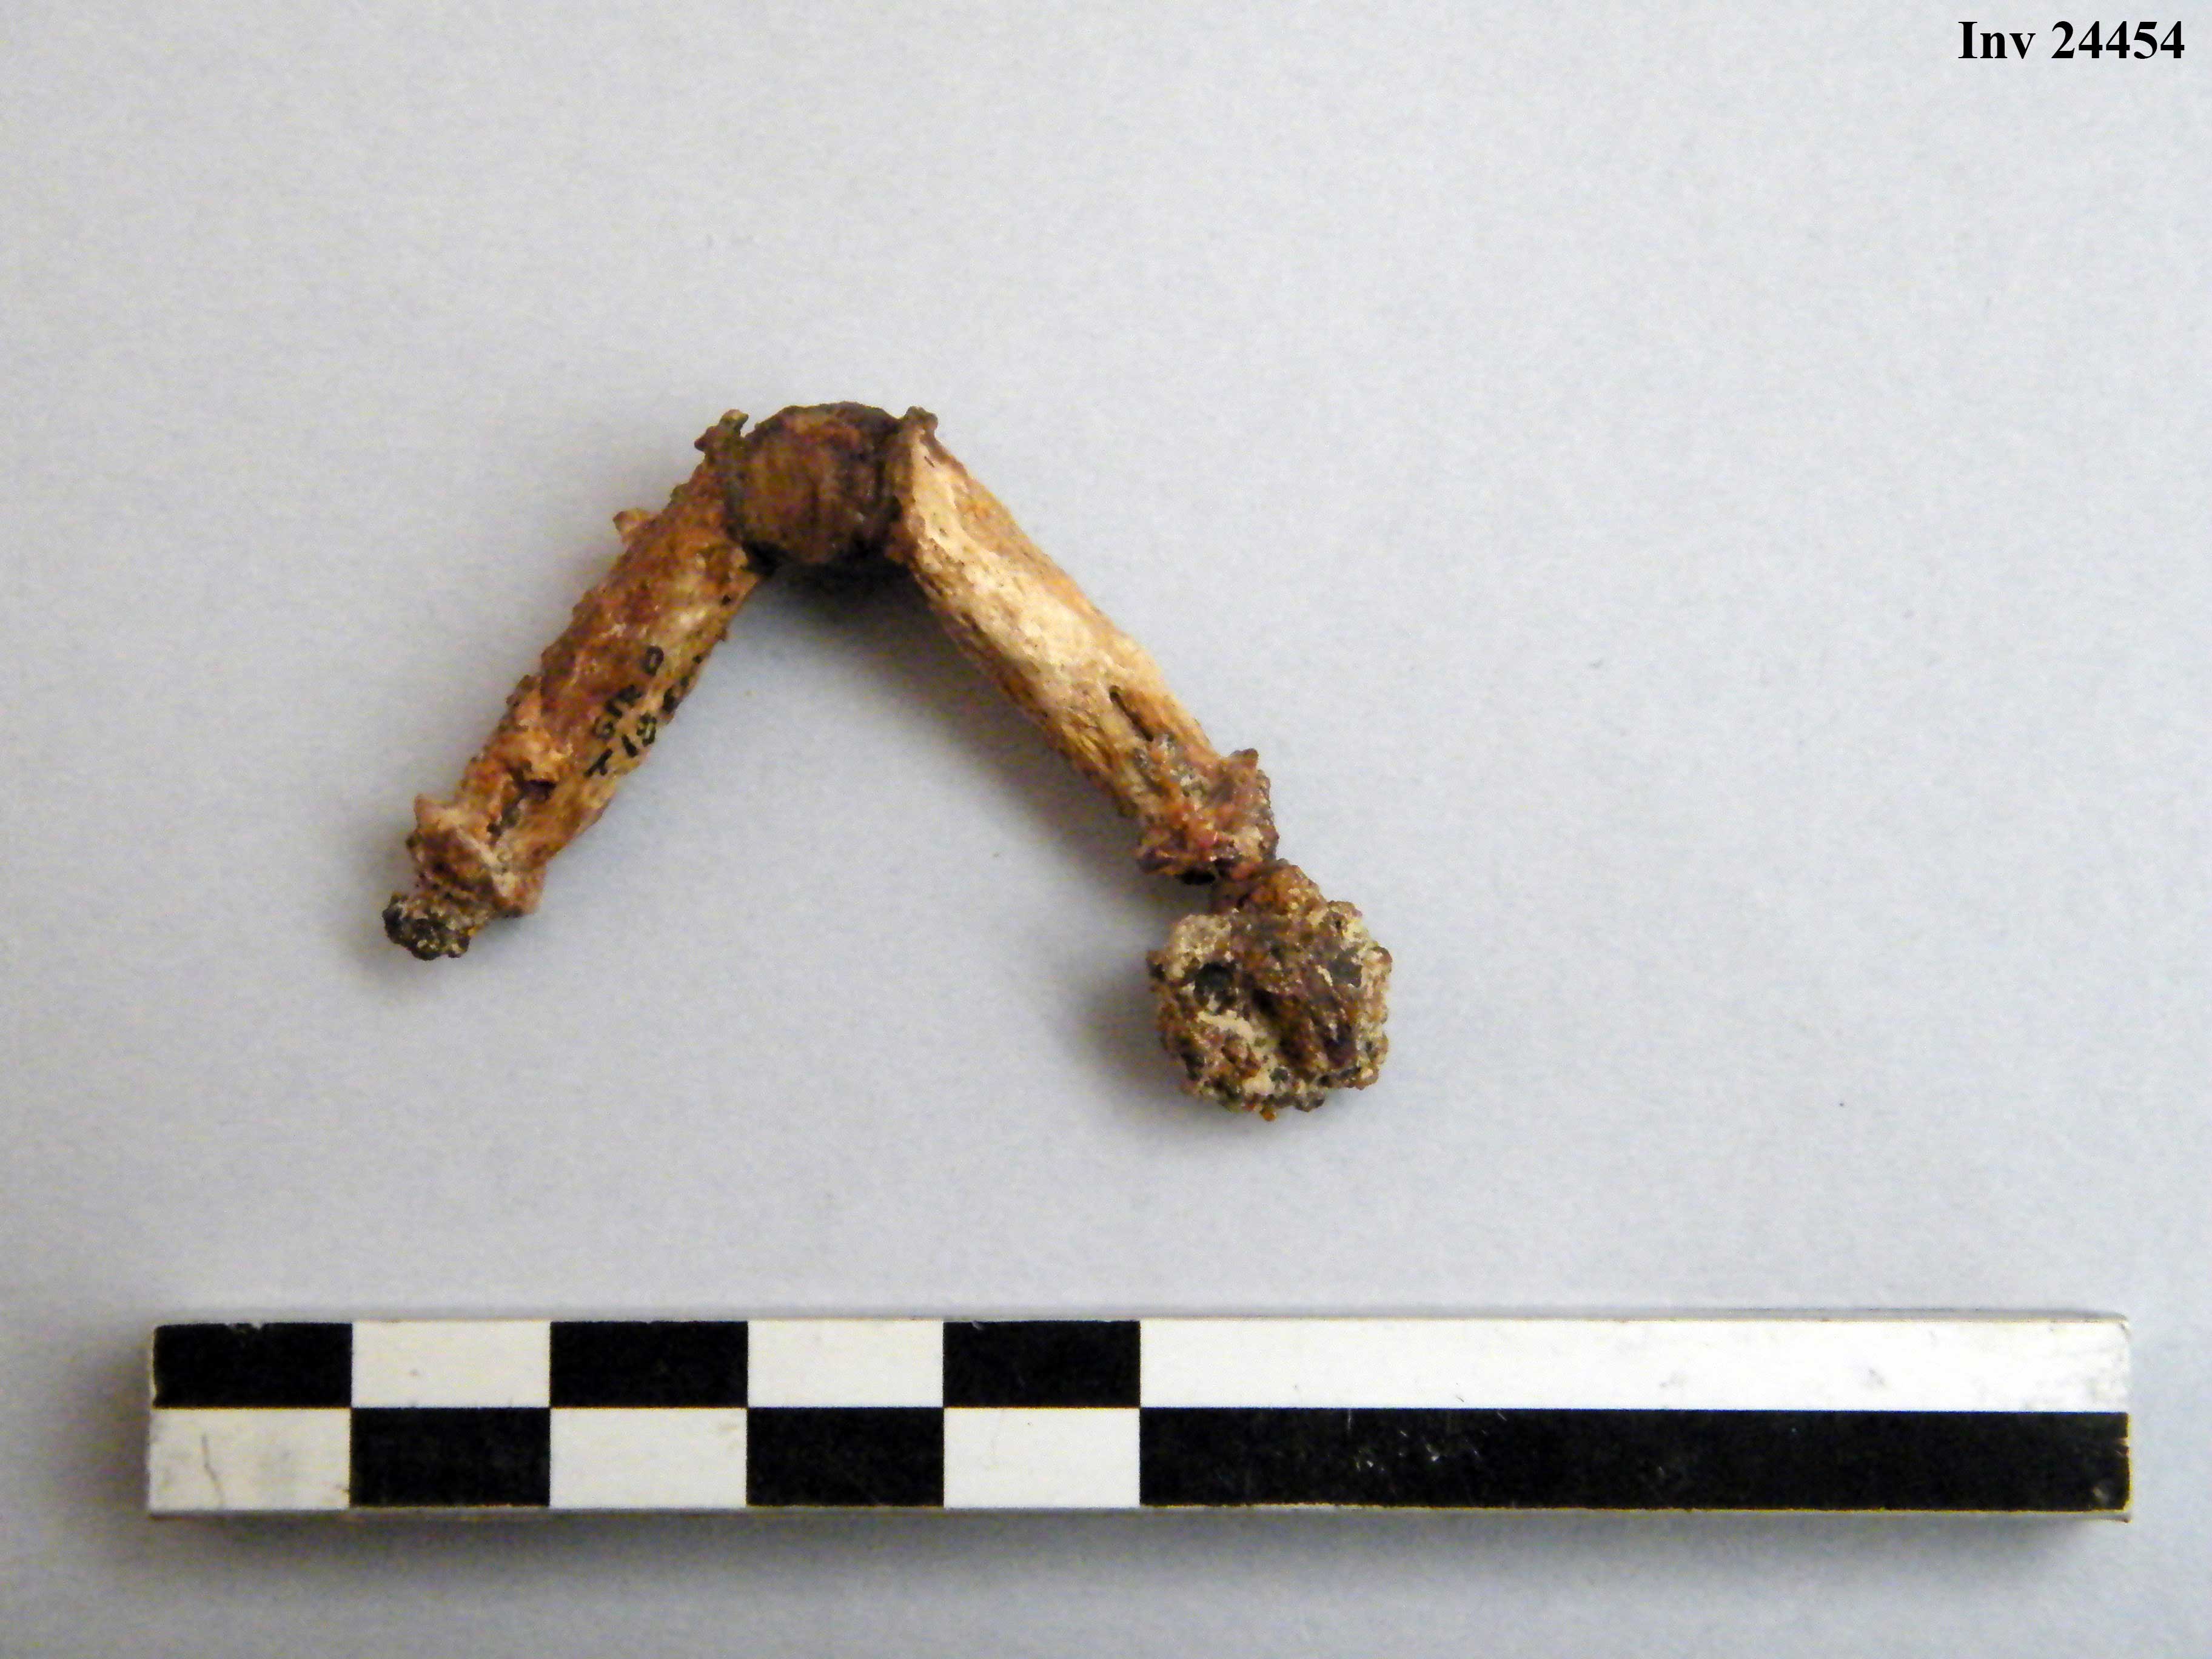 fibula, ad arco rivestito - Piceno IVb (V a.C)